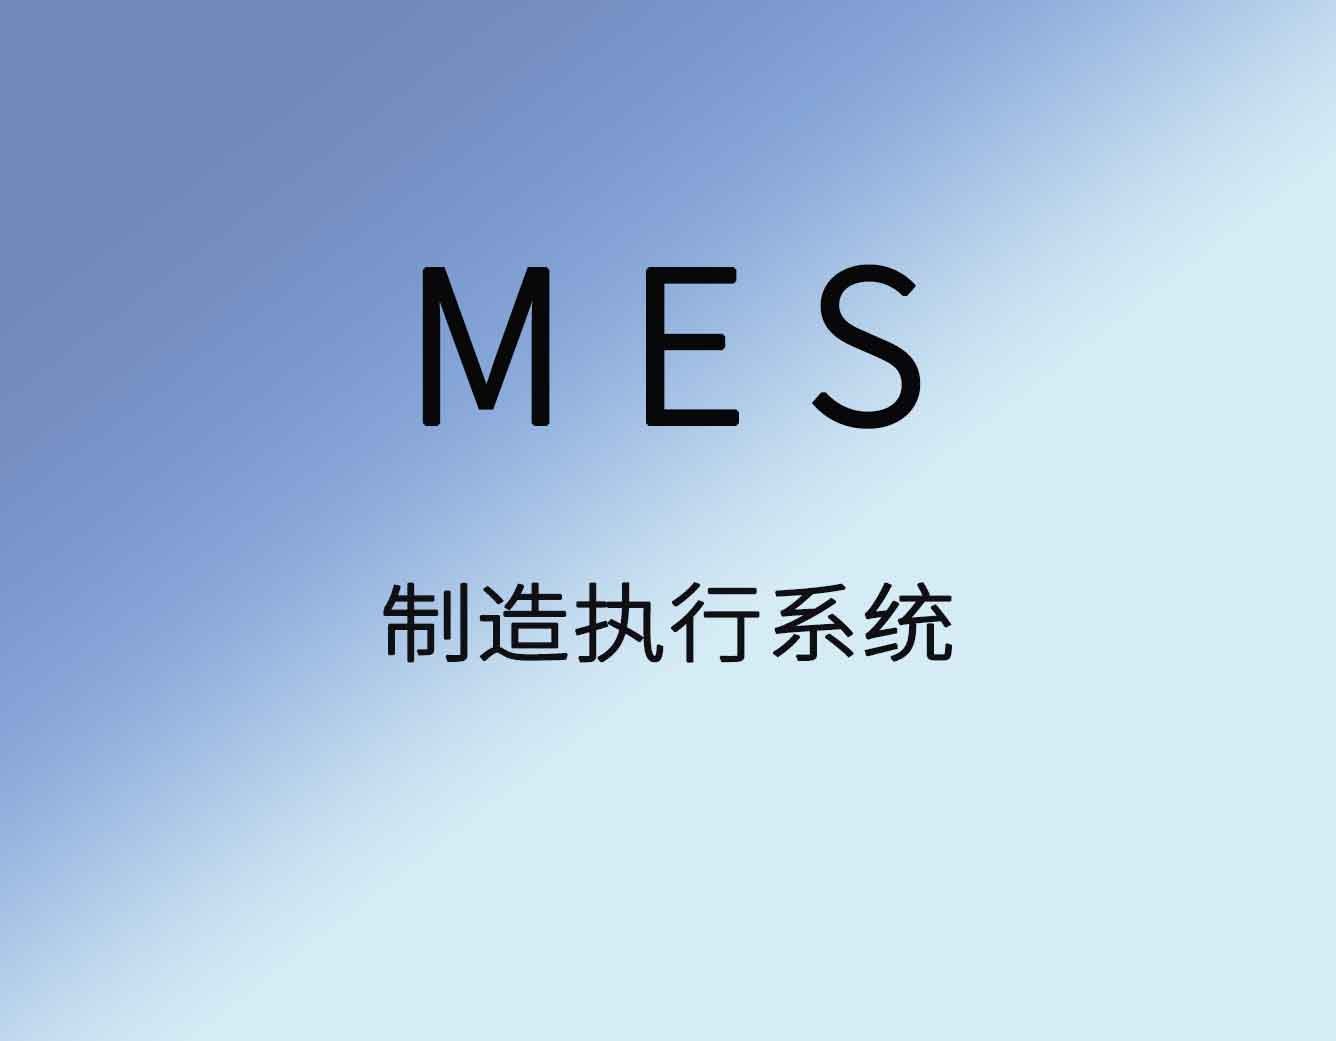 聚米MES生产管理软件|车间管理|制造执行系统